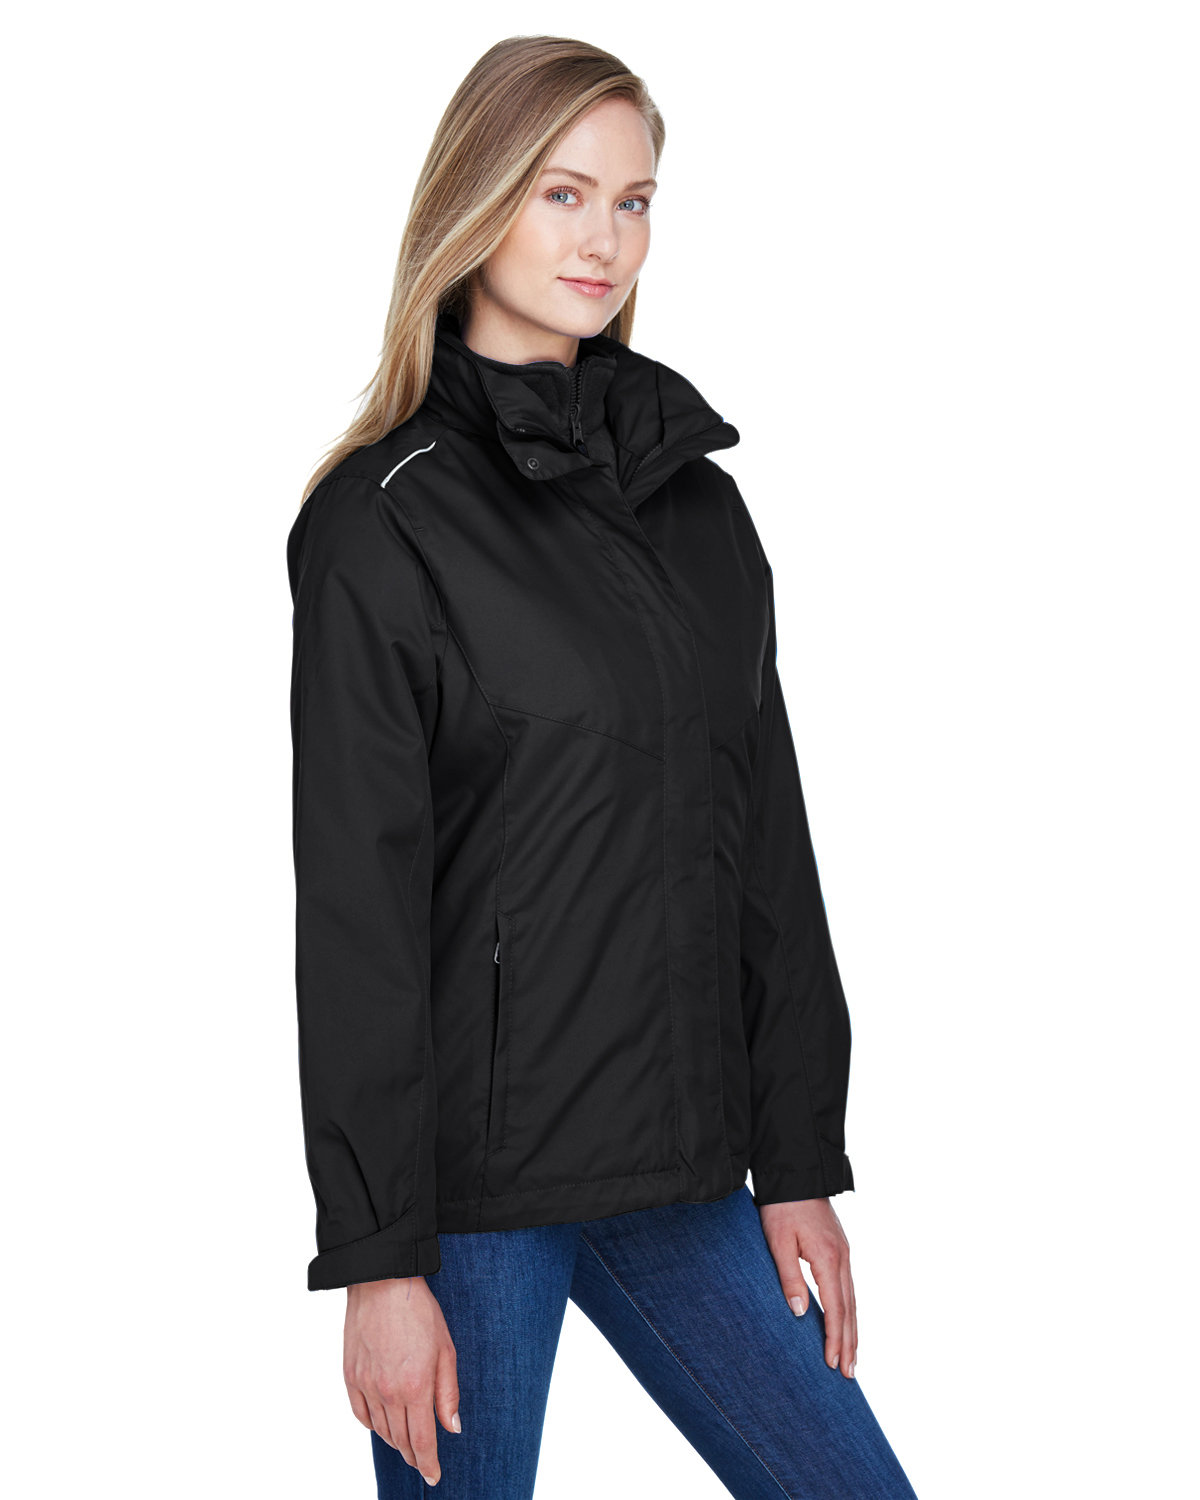 CORE365 Ladies' Region 3-in-1 Jacket with Fleece Liner | alphabroder